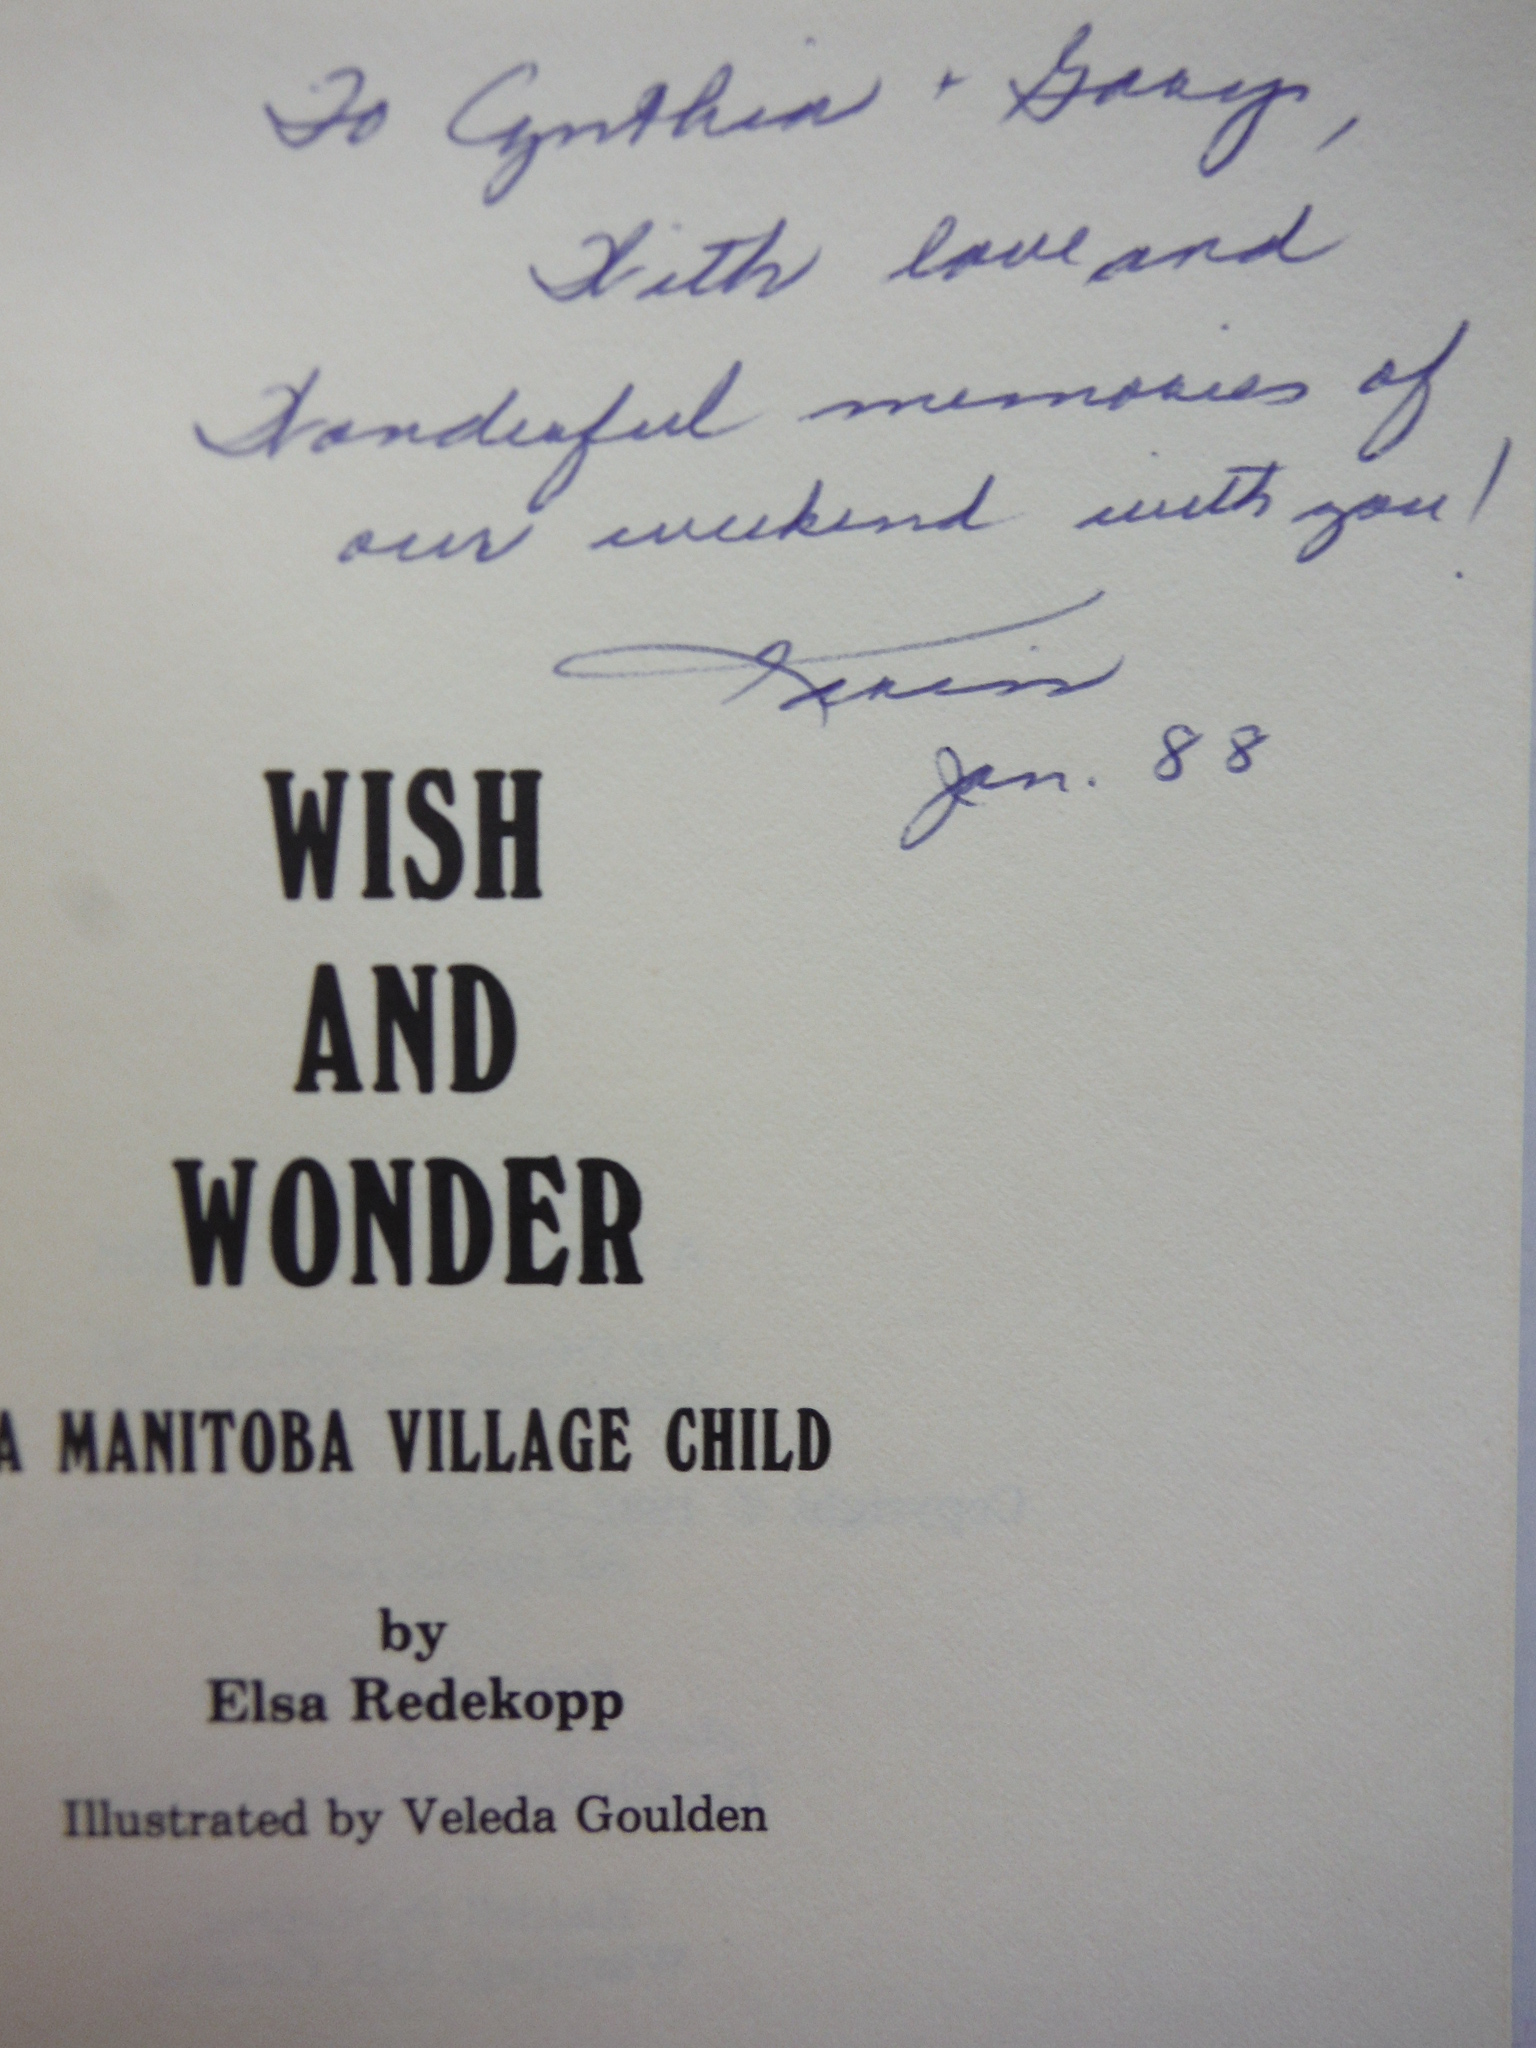 Image 1 of 2 paperbacks by Elsa Redekopp